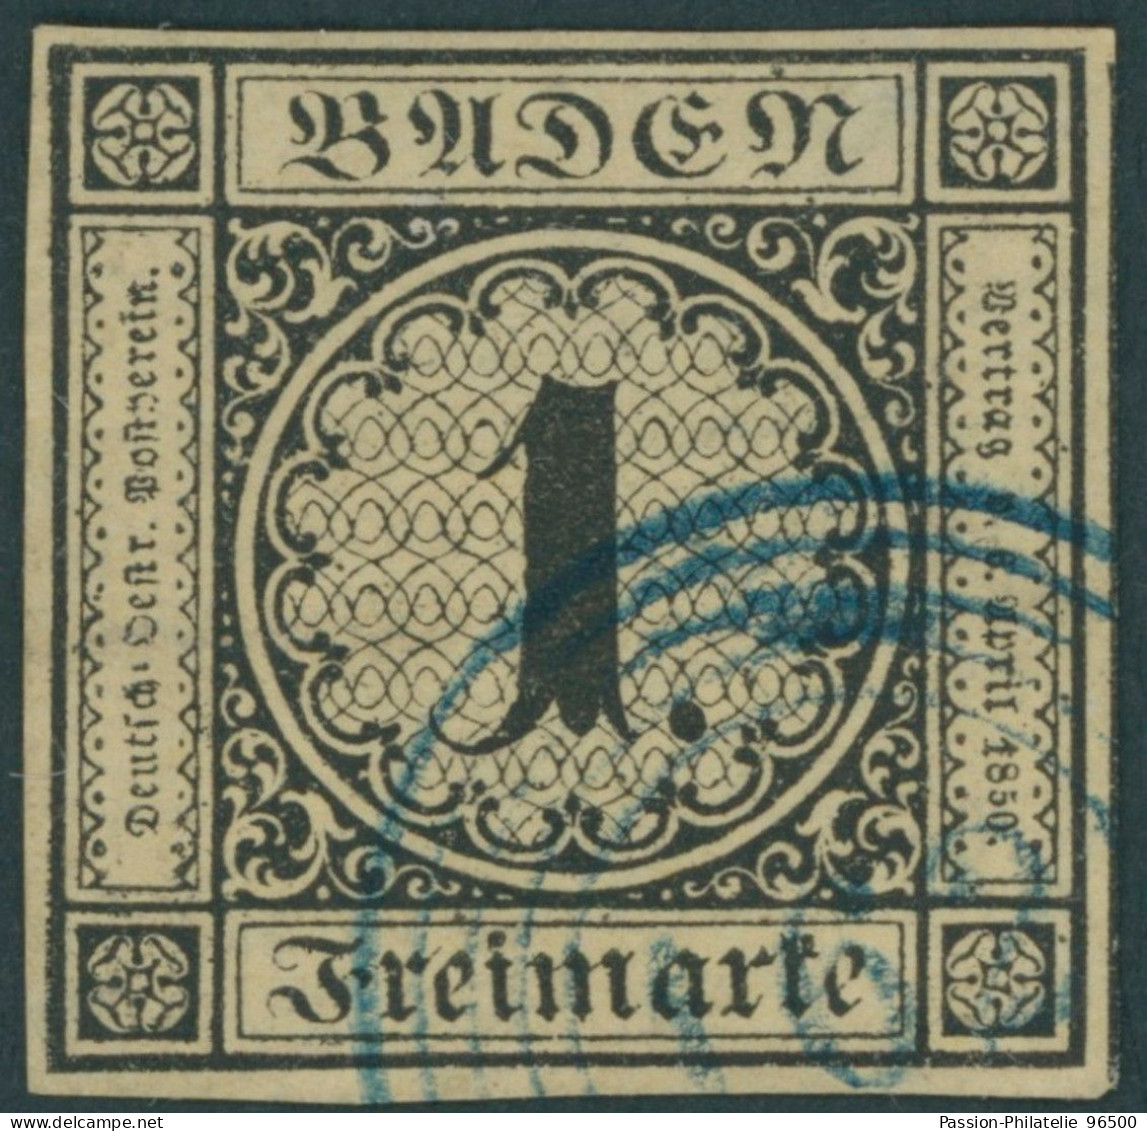 BADEN 1a O, 1851, 1 Kr. Schwarz Auf Sämisch Mit Blauem Nummernstempel 162 (Zell A.H.) - Gebraucht